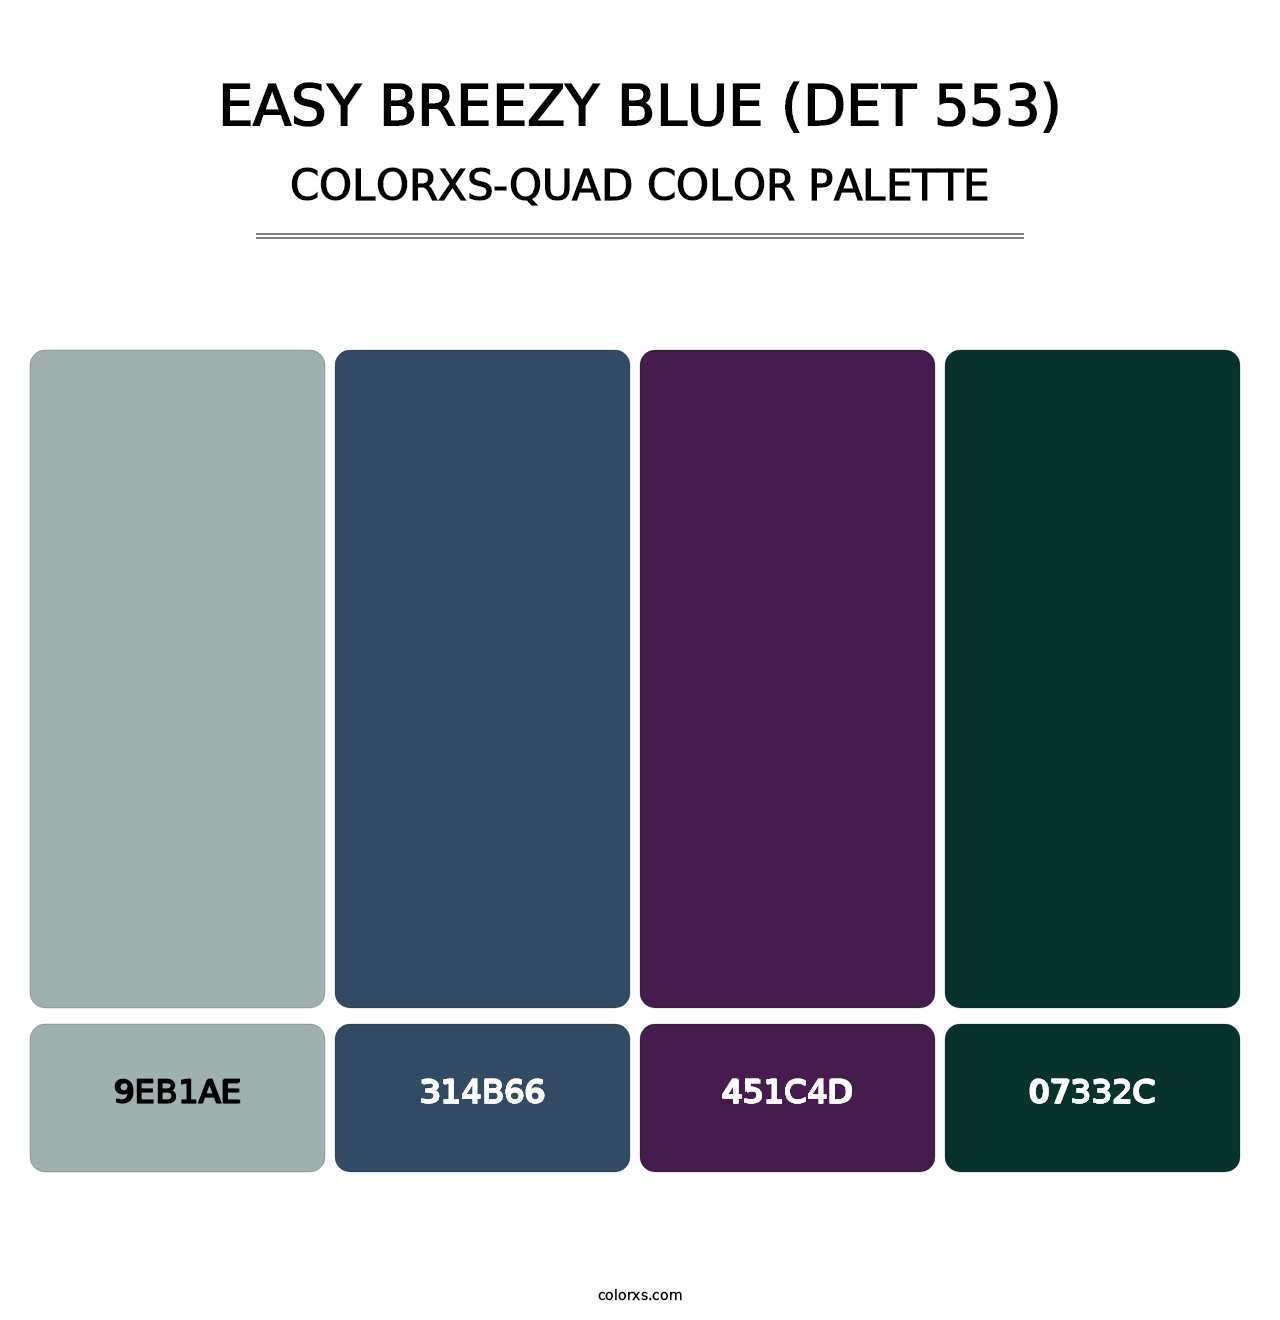 Easy Breezy Blue (DET 553) - Colorxs Quad Palette